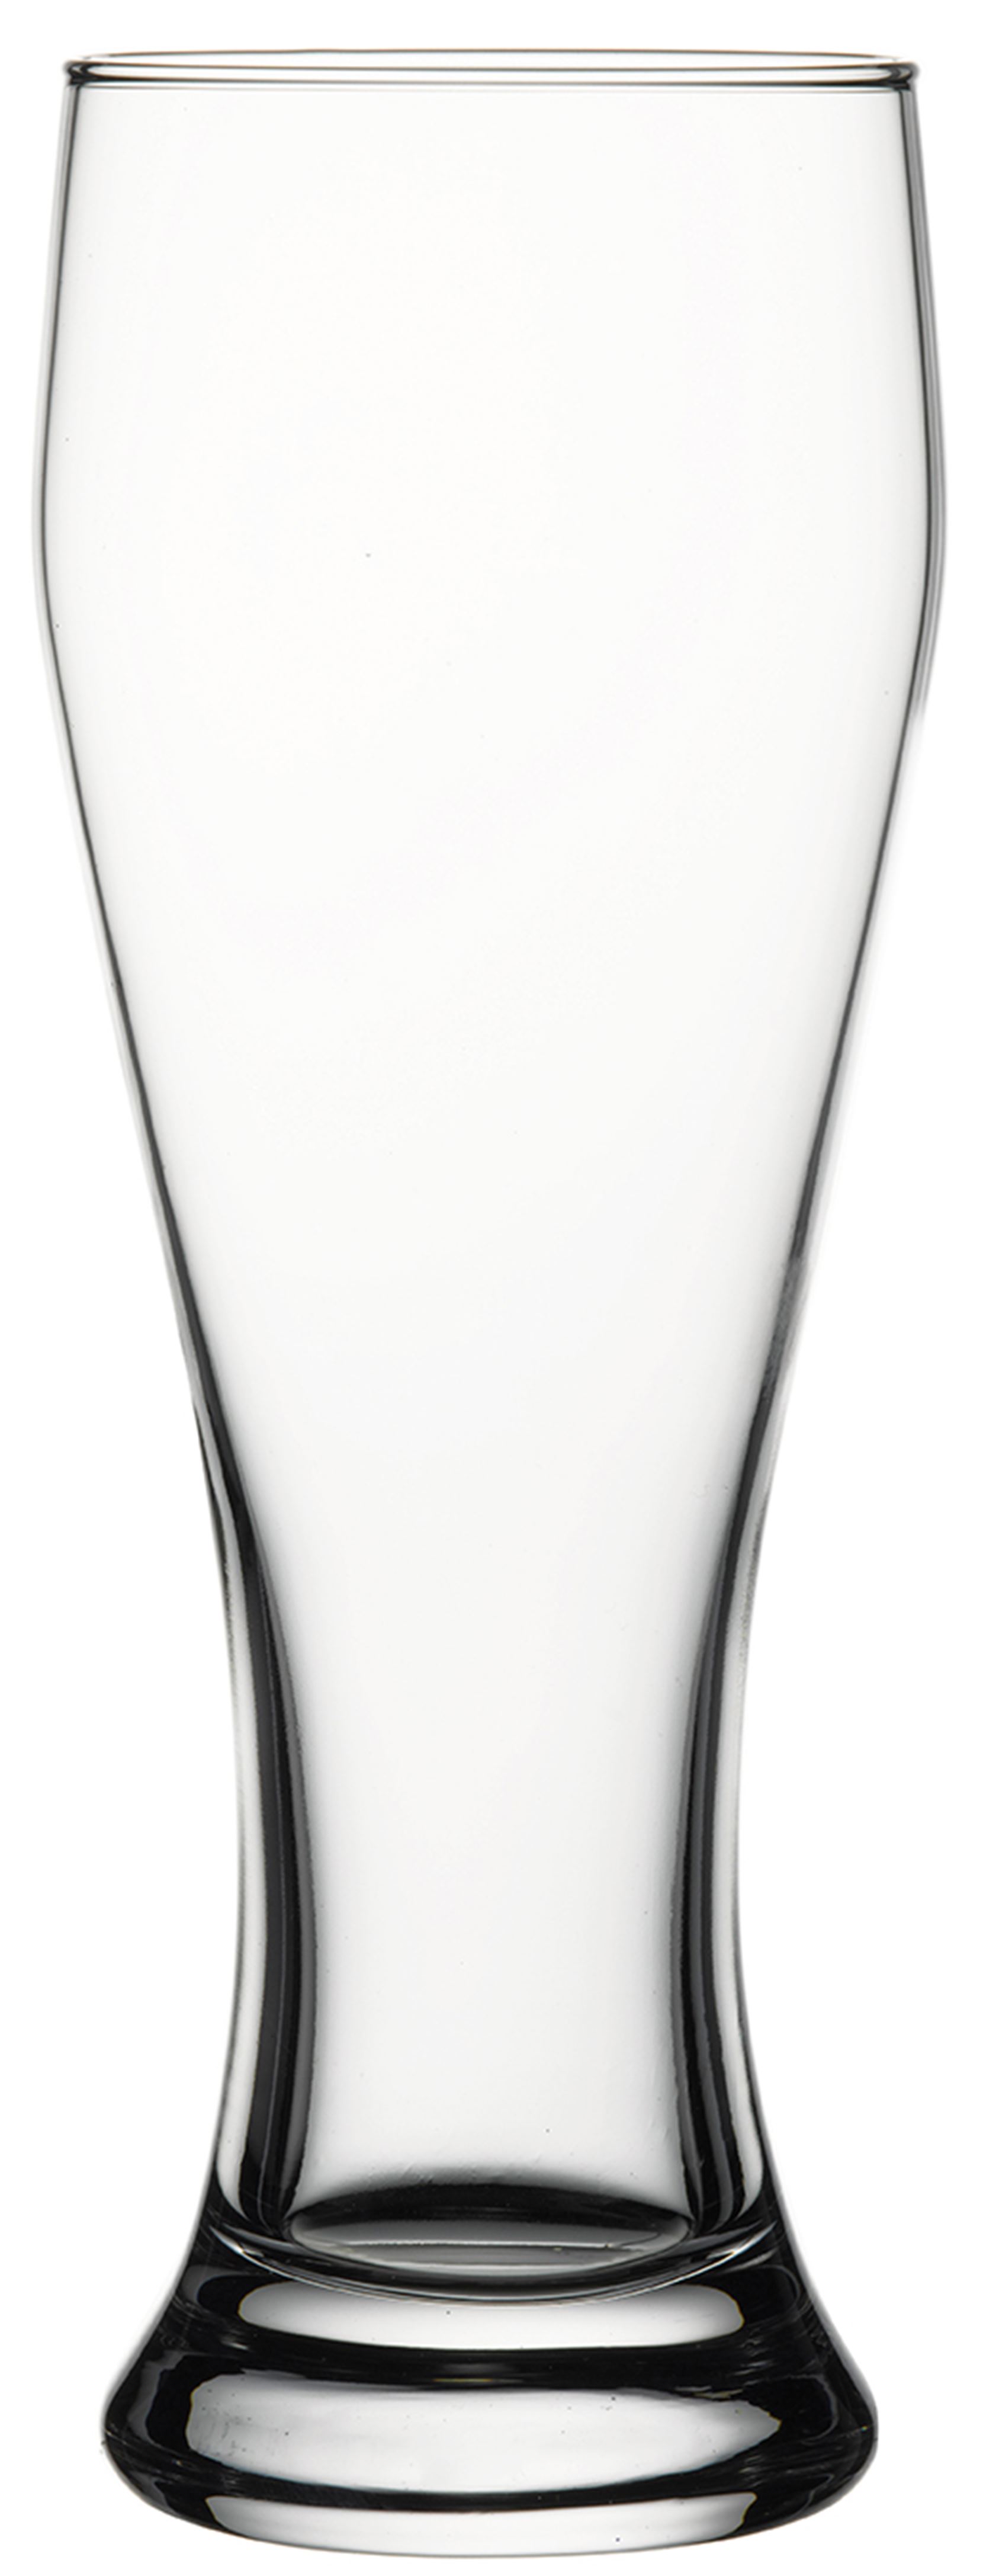 Weizenbierglas, 0,415 ltr., Glas